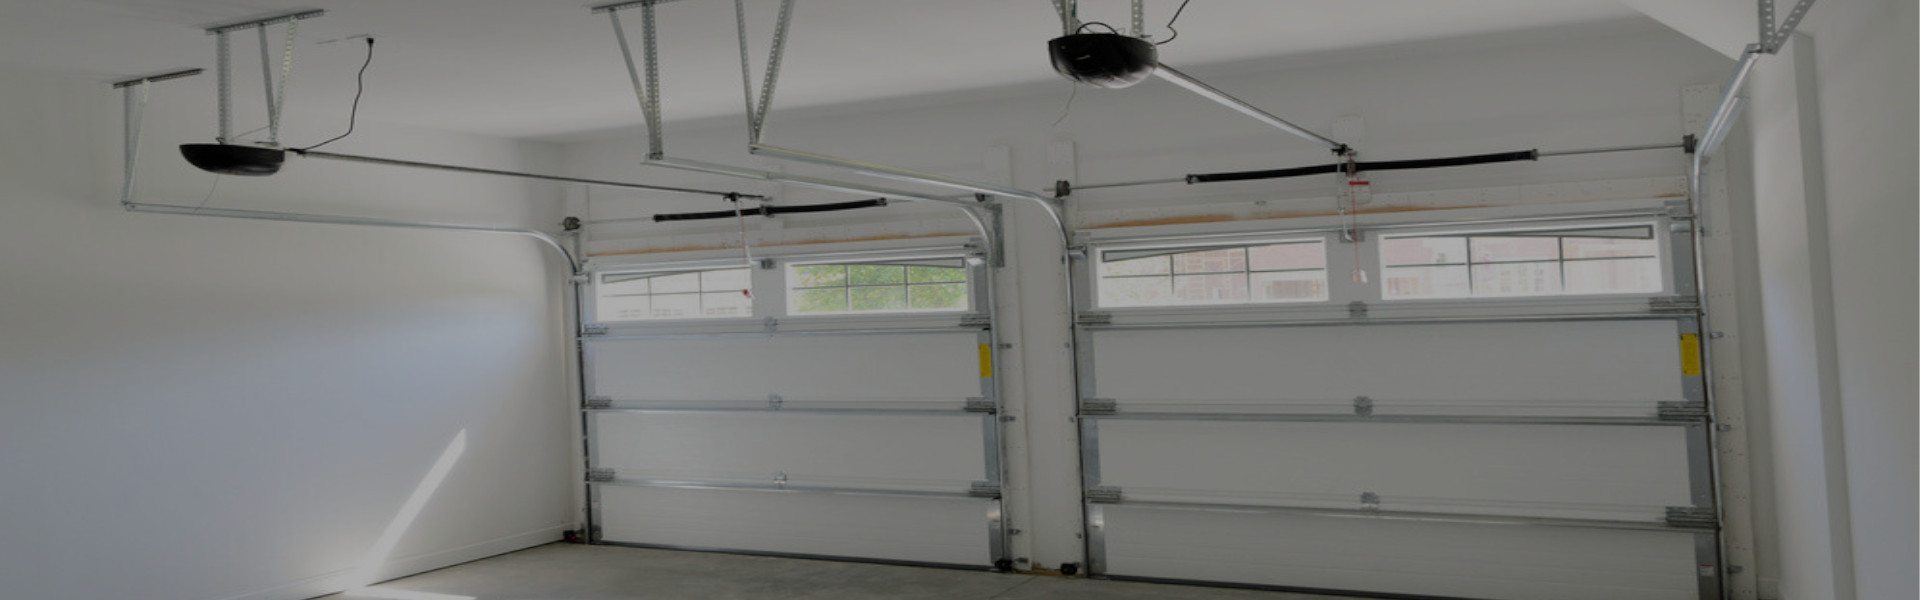 Slider Garage Door Repair, Glaziers in Barkingside, Hainault, IG6